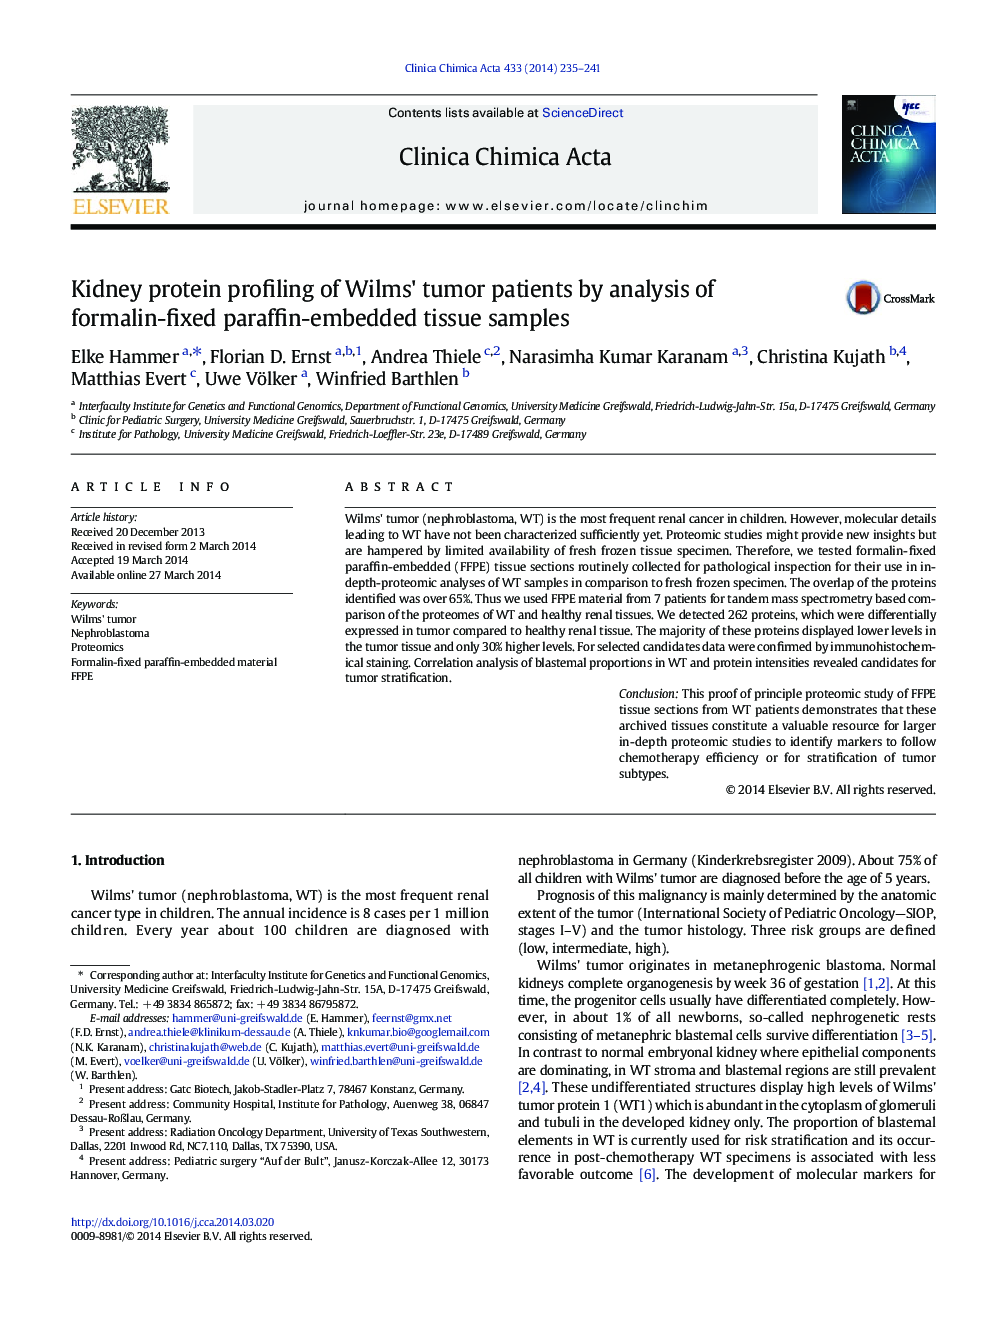 بررسی پروتئین کلیه بیماران تومور ویلمس با تجزیه و تحلیل نمونه های بافتی پارافین ثابت 